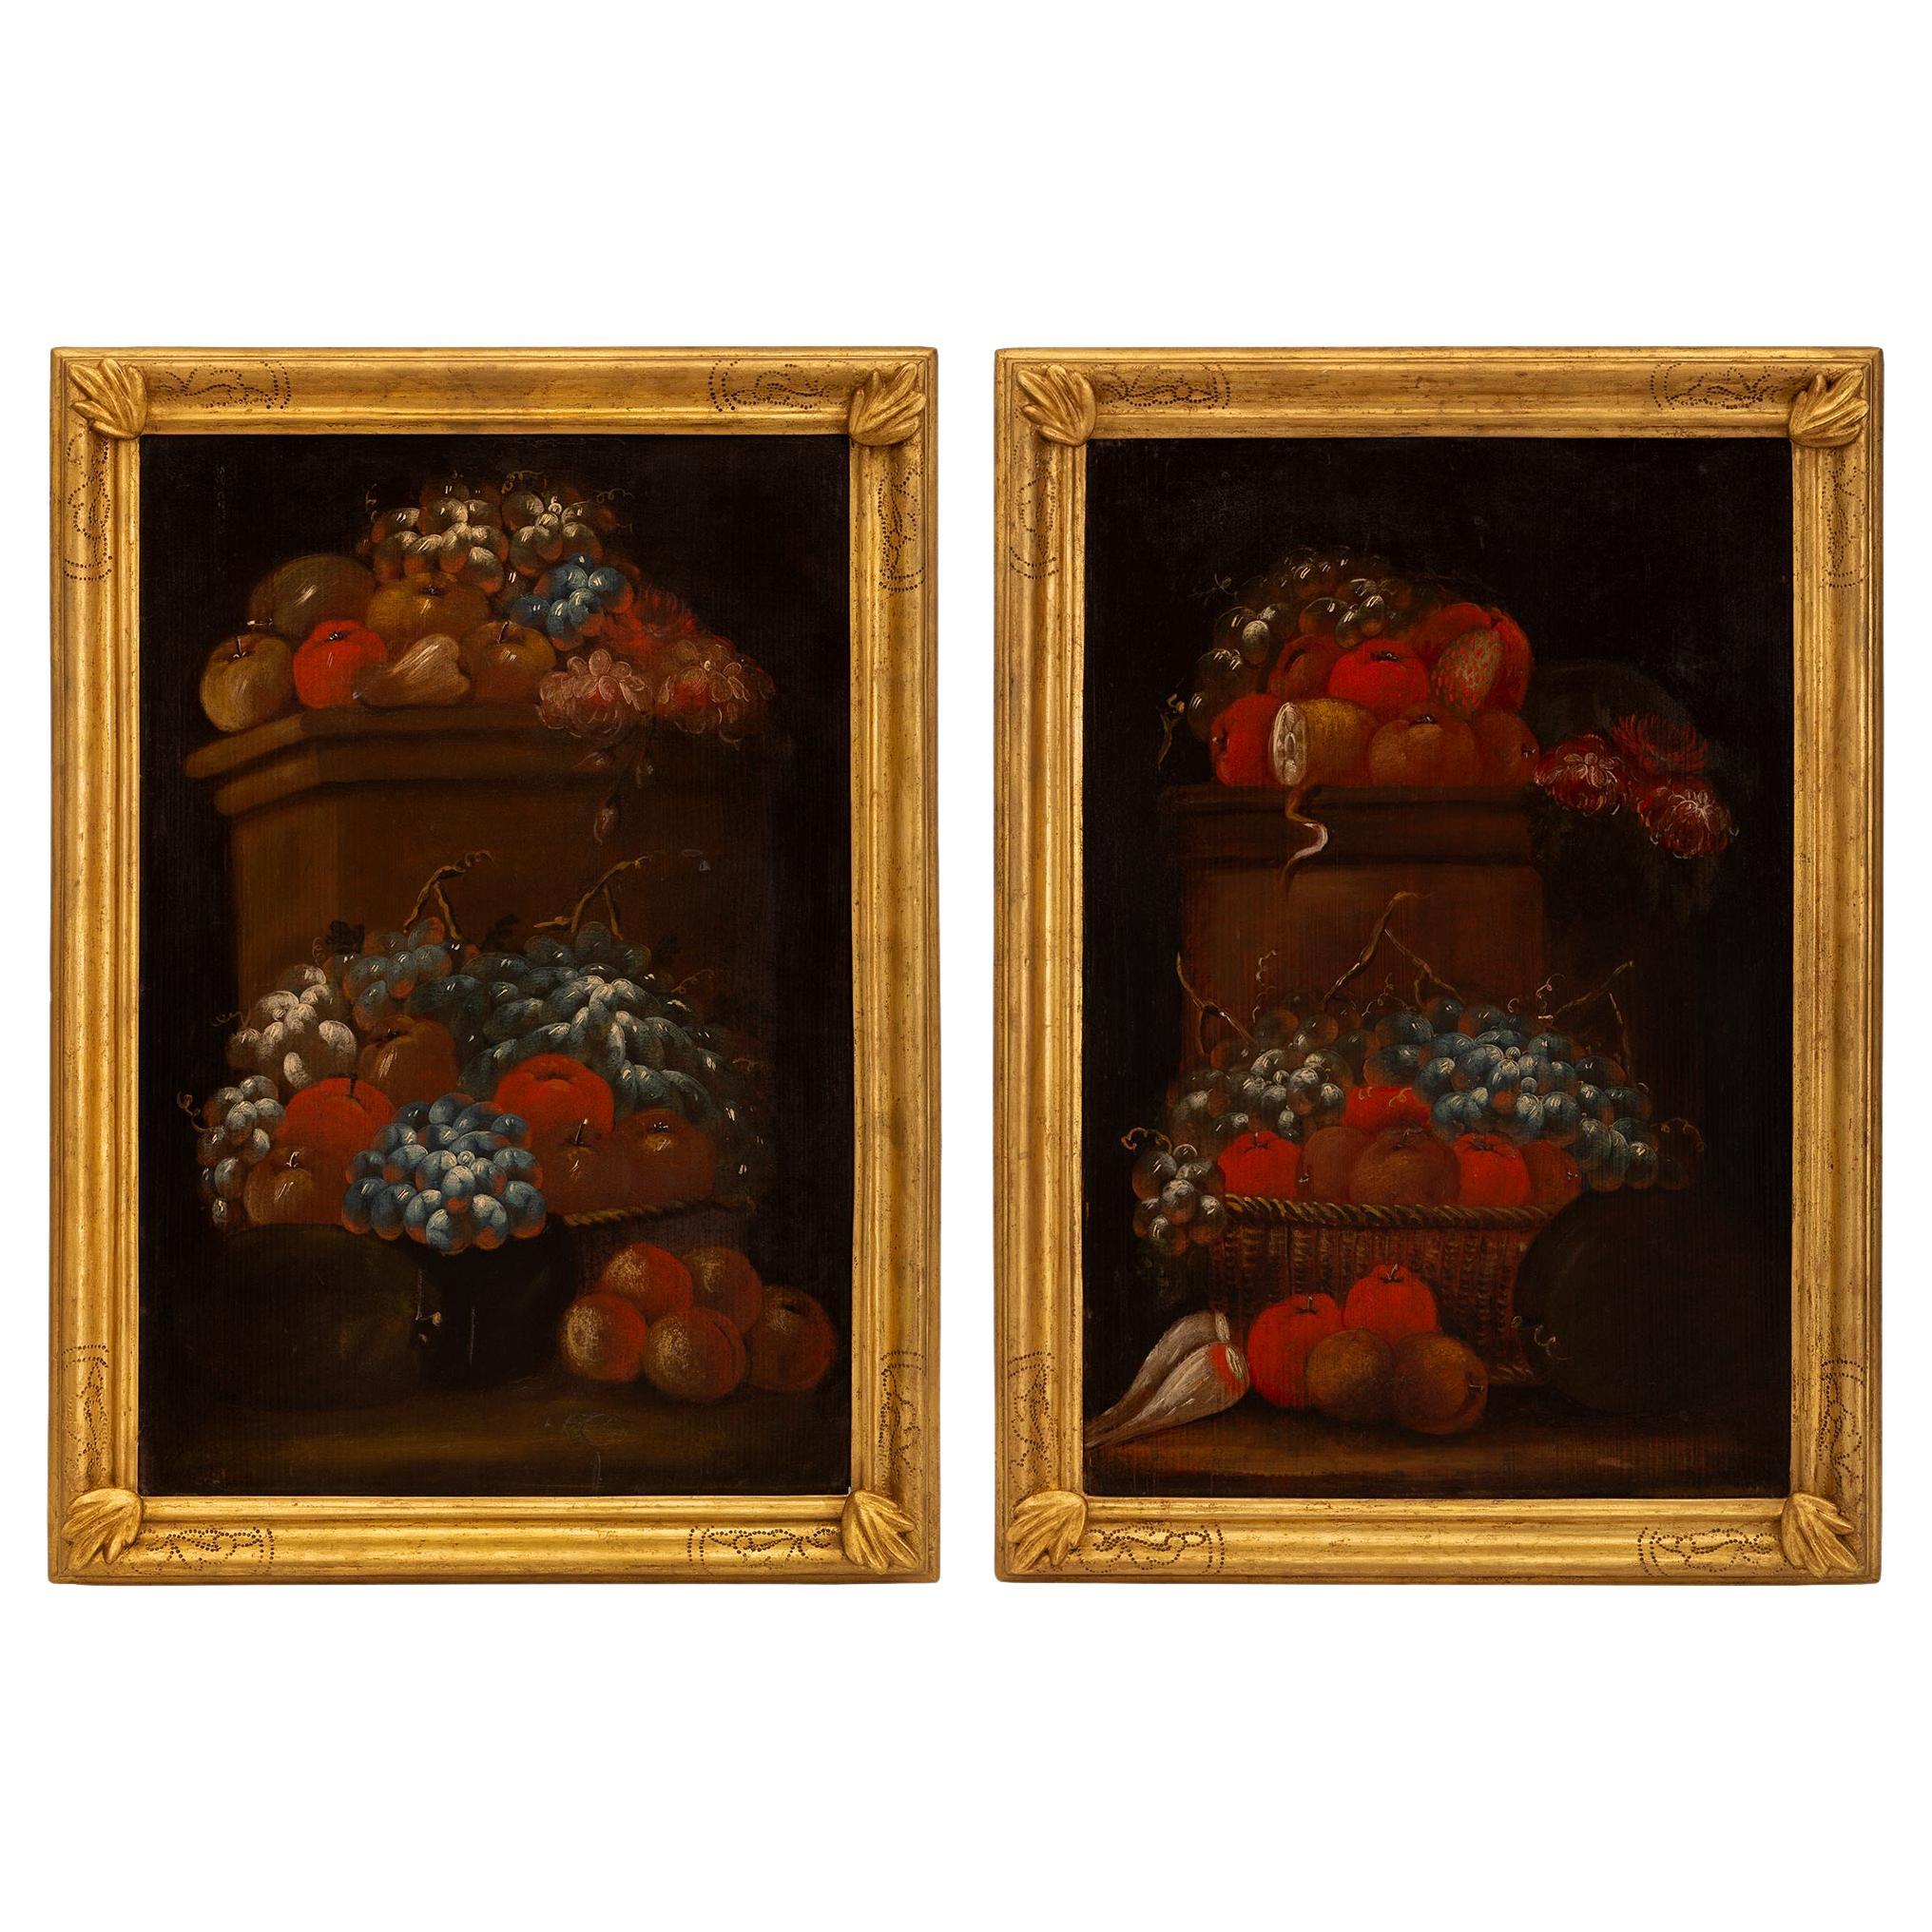 Paire de natures mortes italiennes du 17ème siècle peintes à l'huile sur bois